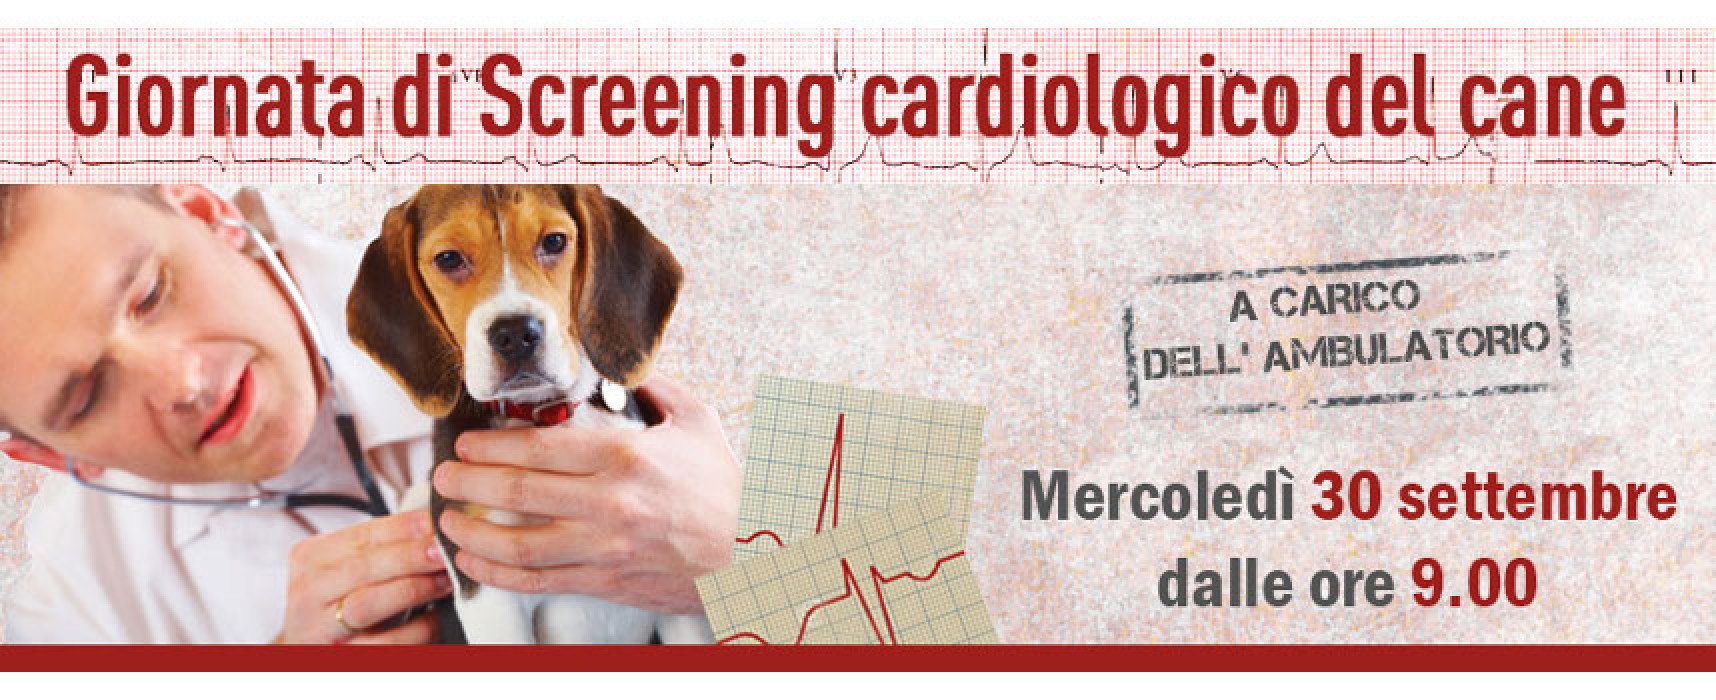 L’ambulatorio Papagni promuove a sue spese la giornata dello screening cardiologico del cane